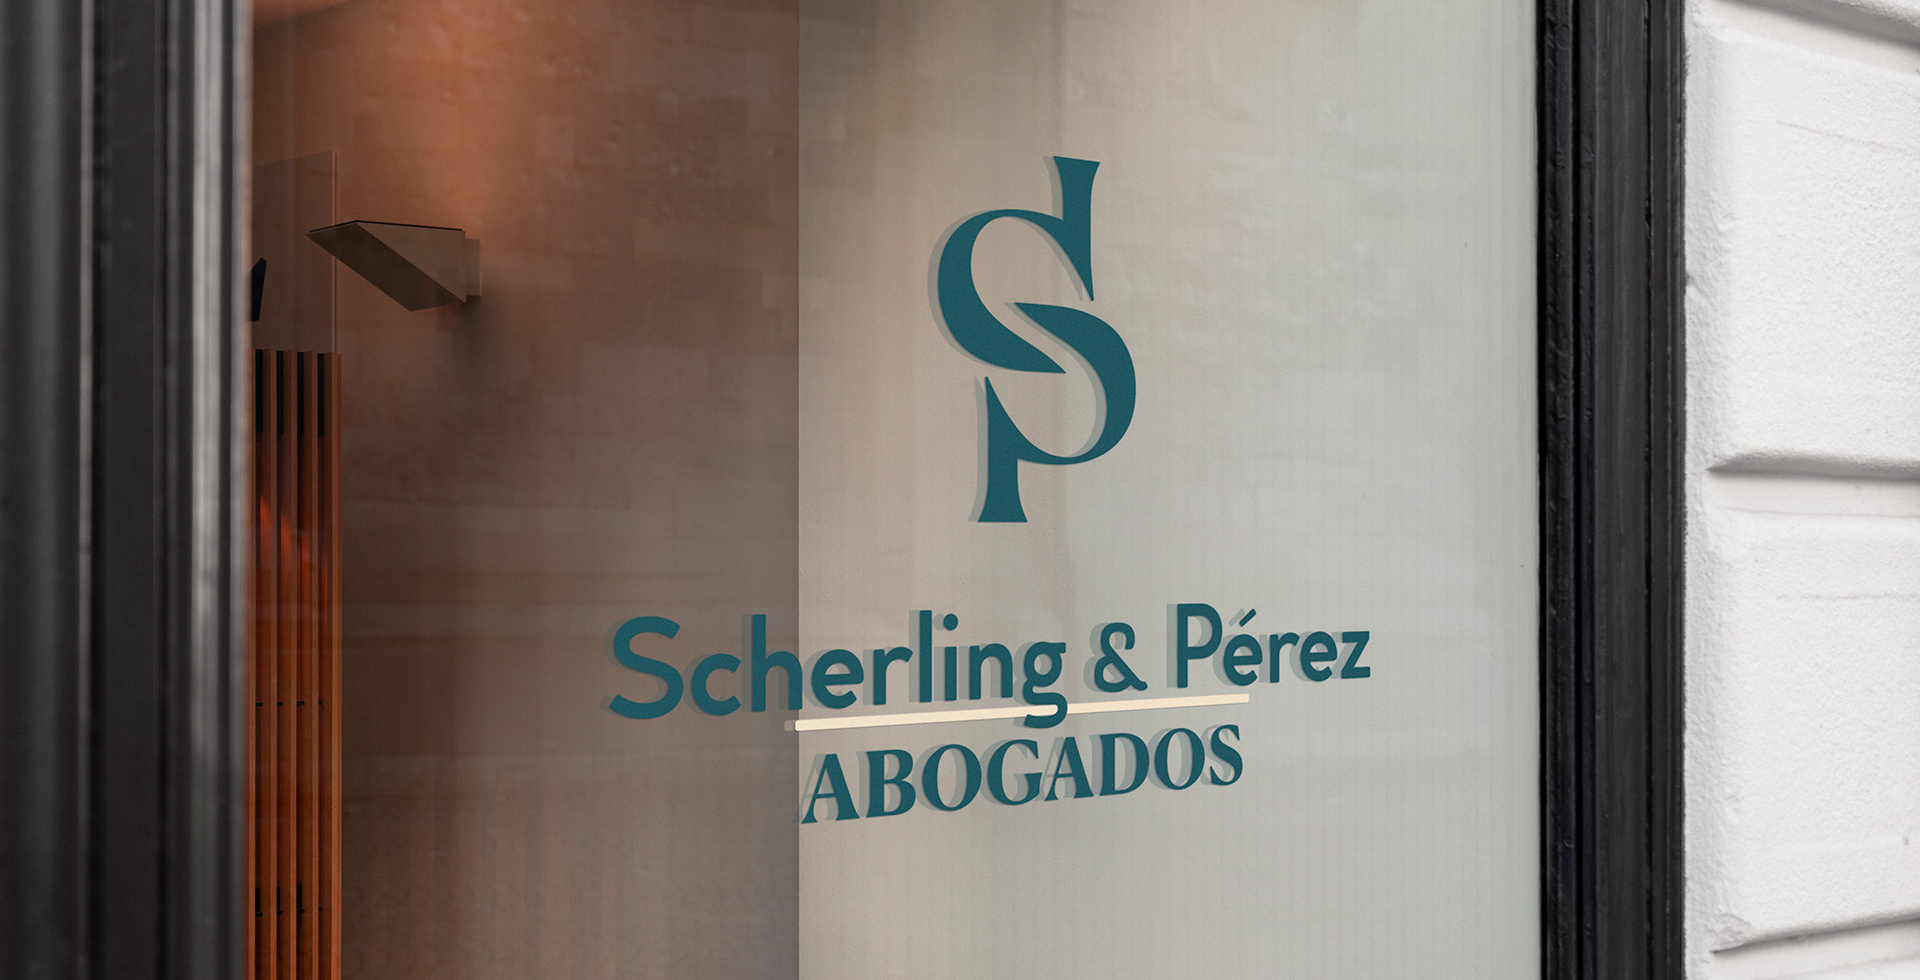 Scherling & Pérez Abogados